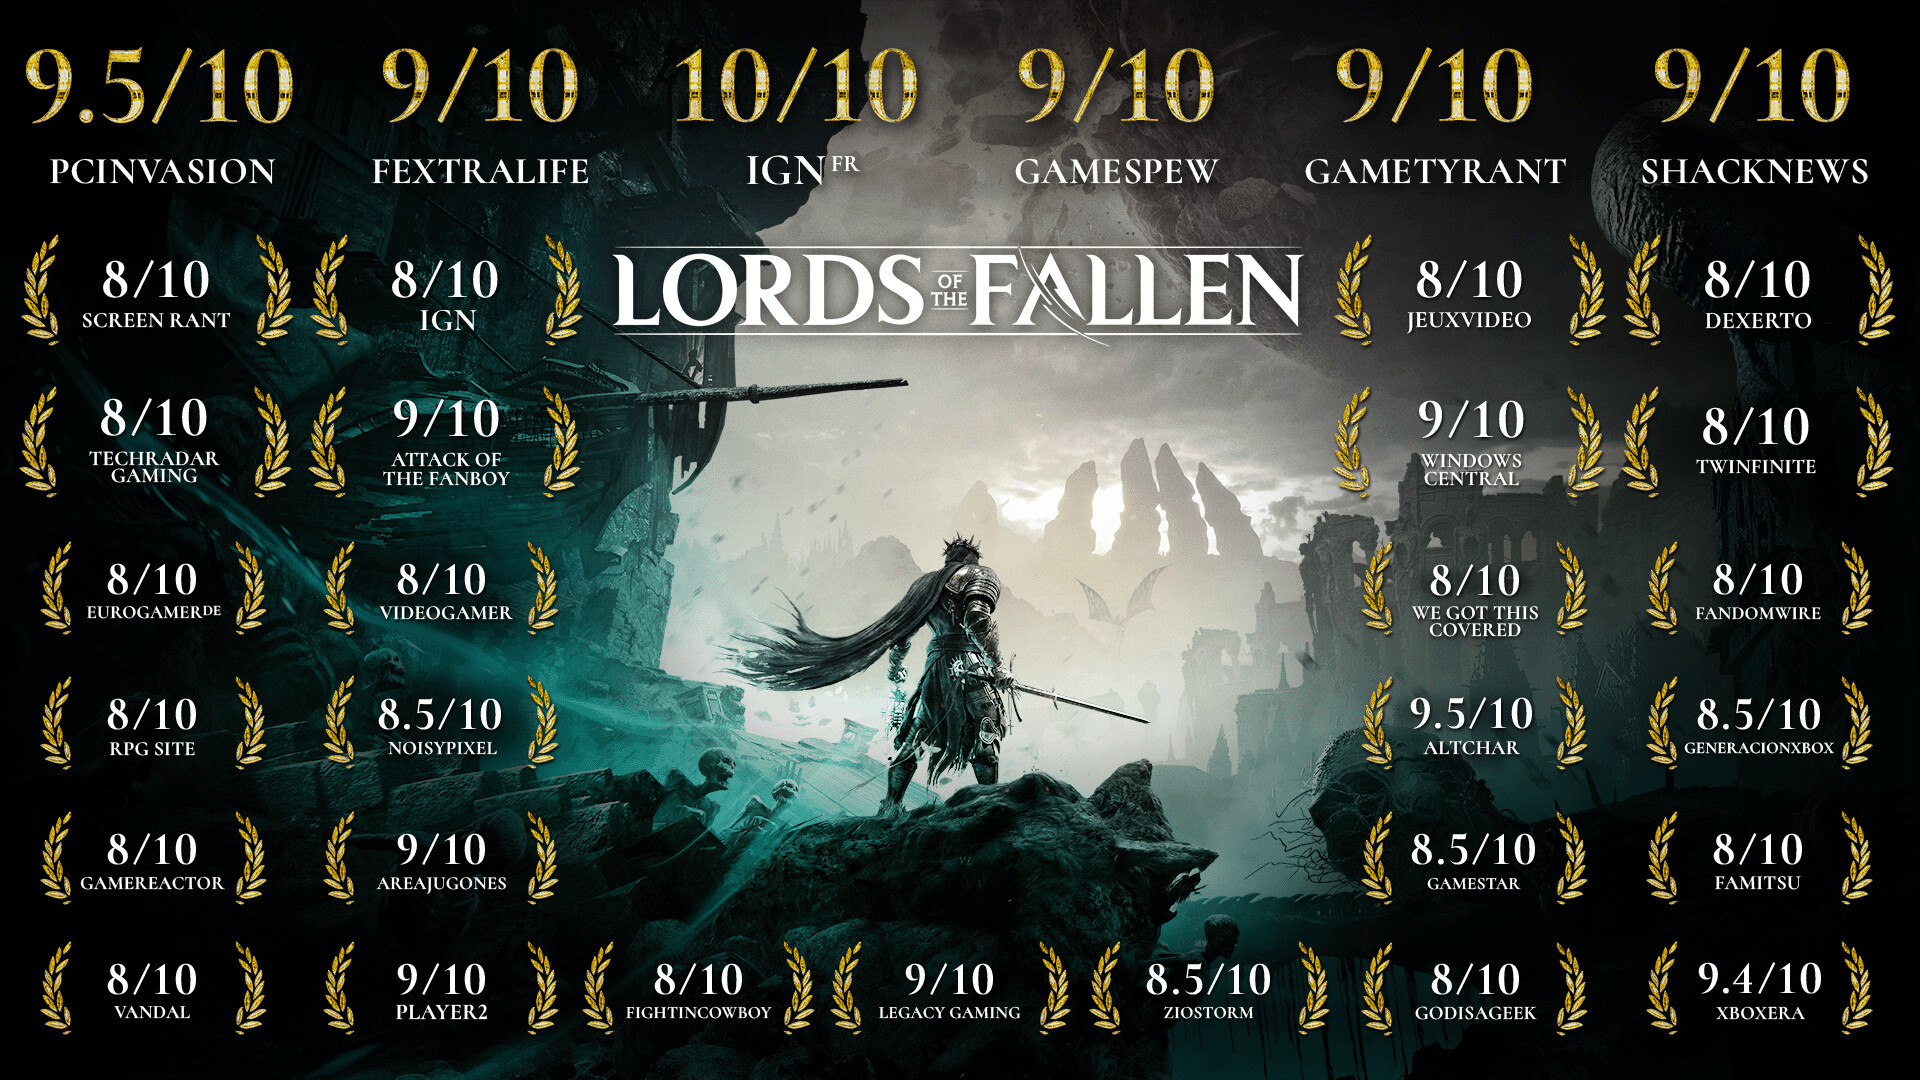 Le jeu Lords of the Fallen profite d'un patch 1.1.214